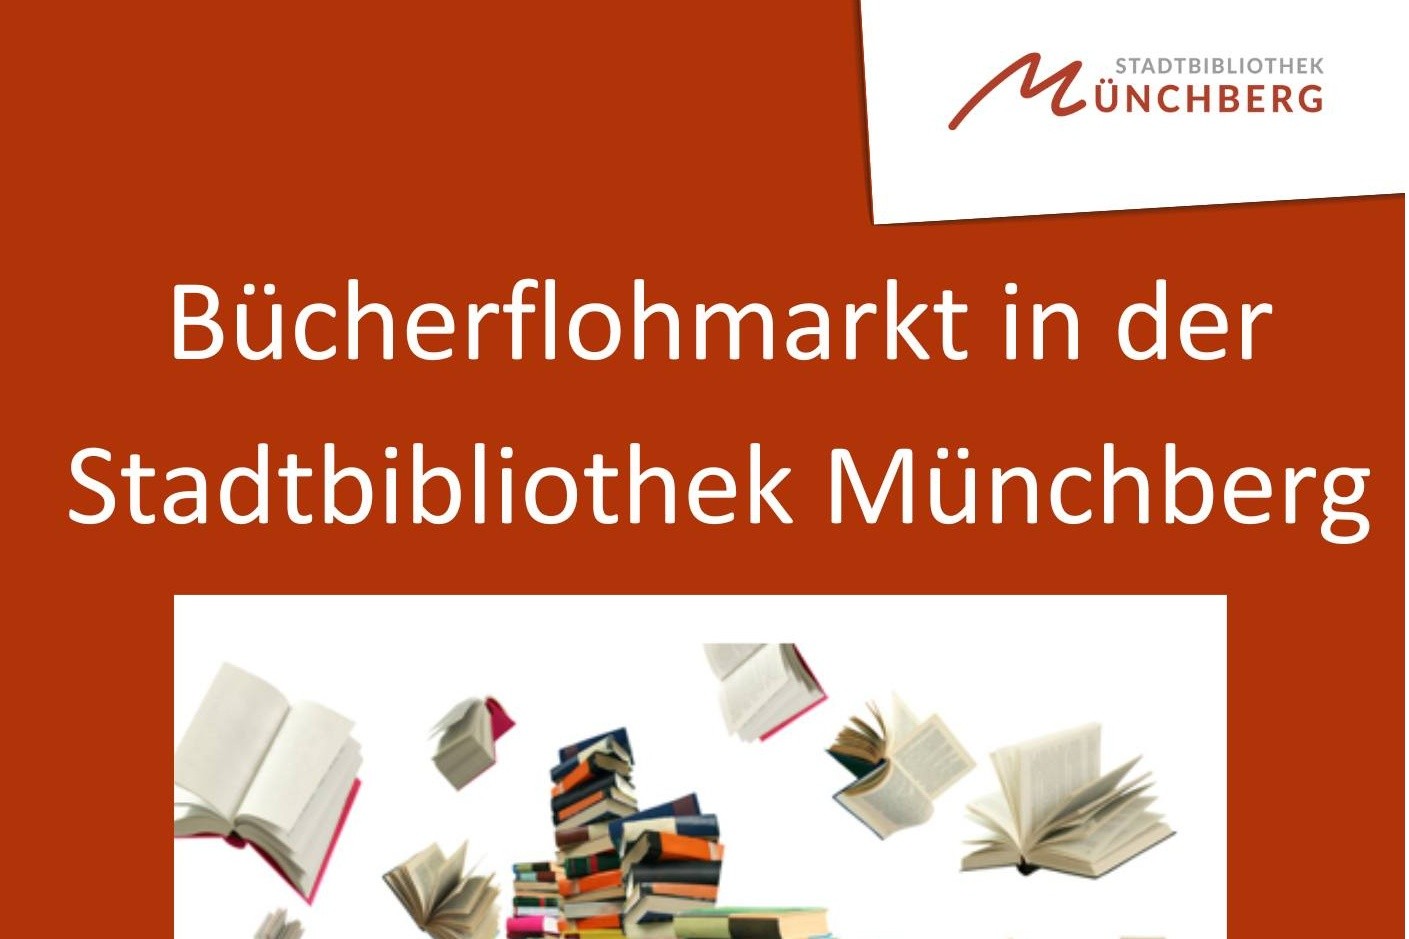 Bücherflohmarkt in der Stadtbibliothek Münchberg